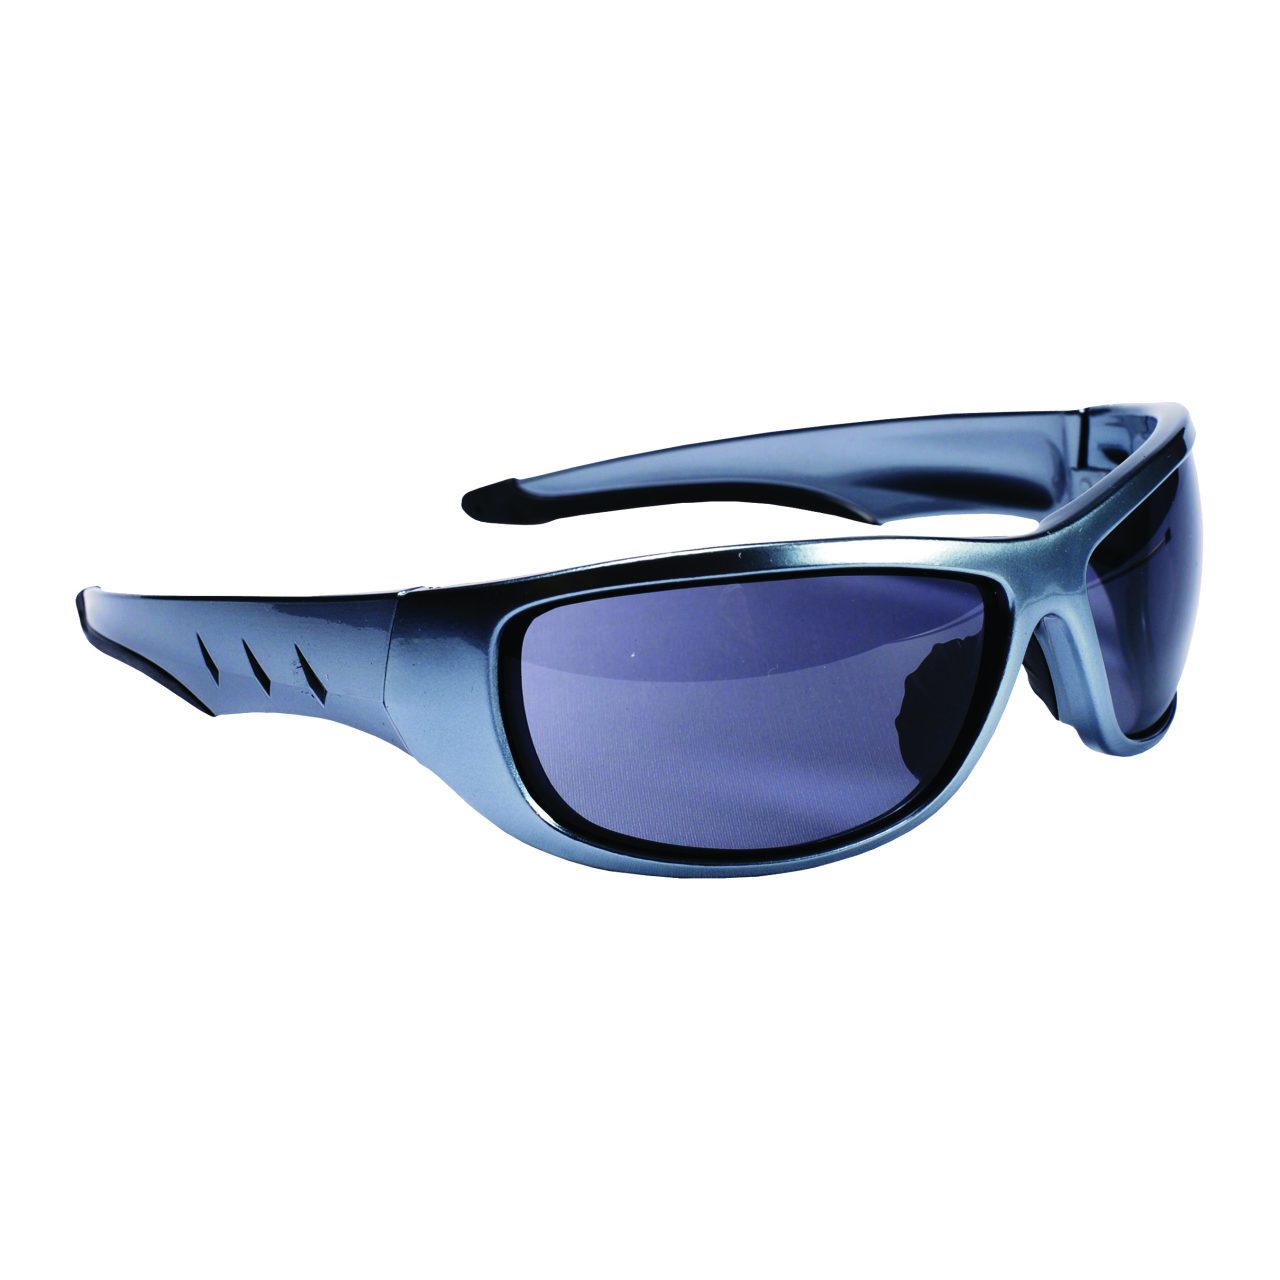 Cordova Aggressor Safety Glasses - SPE03S20